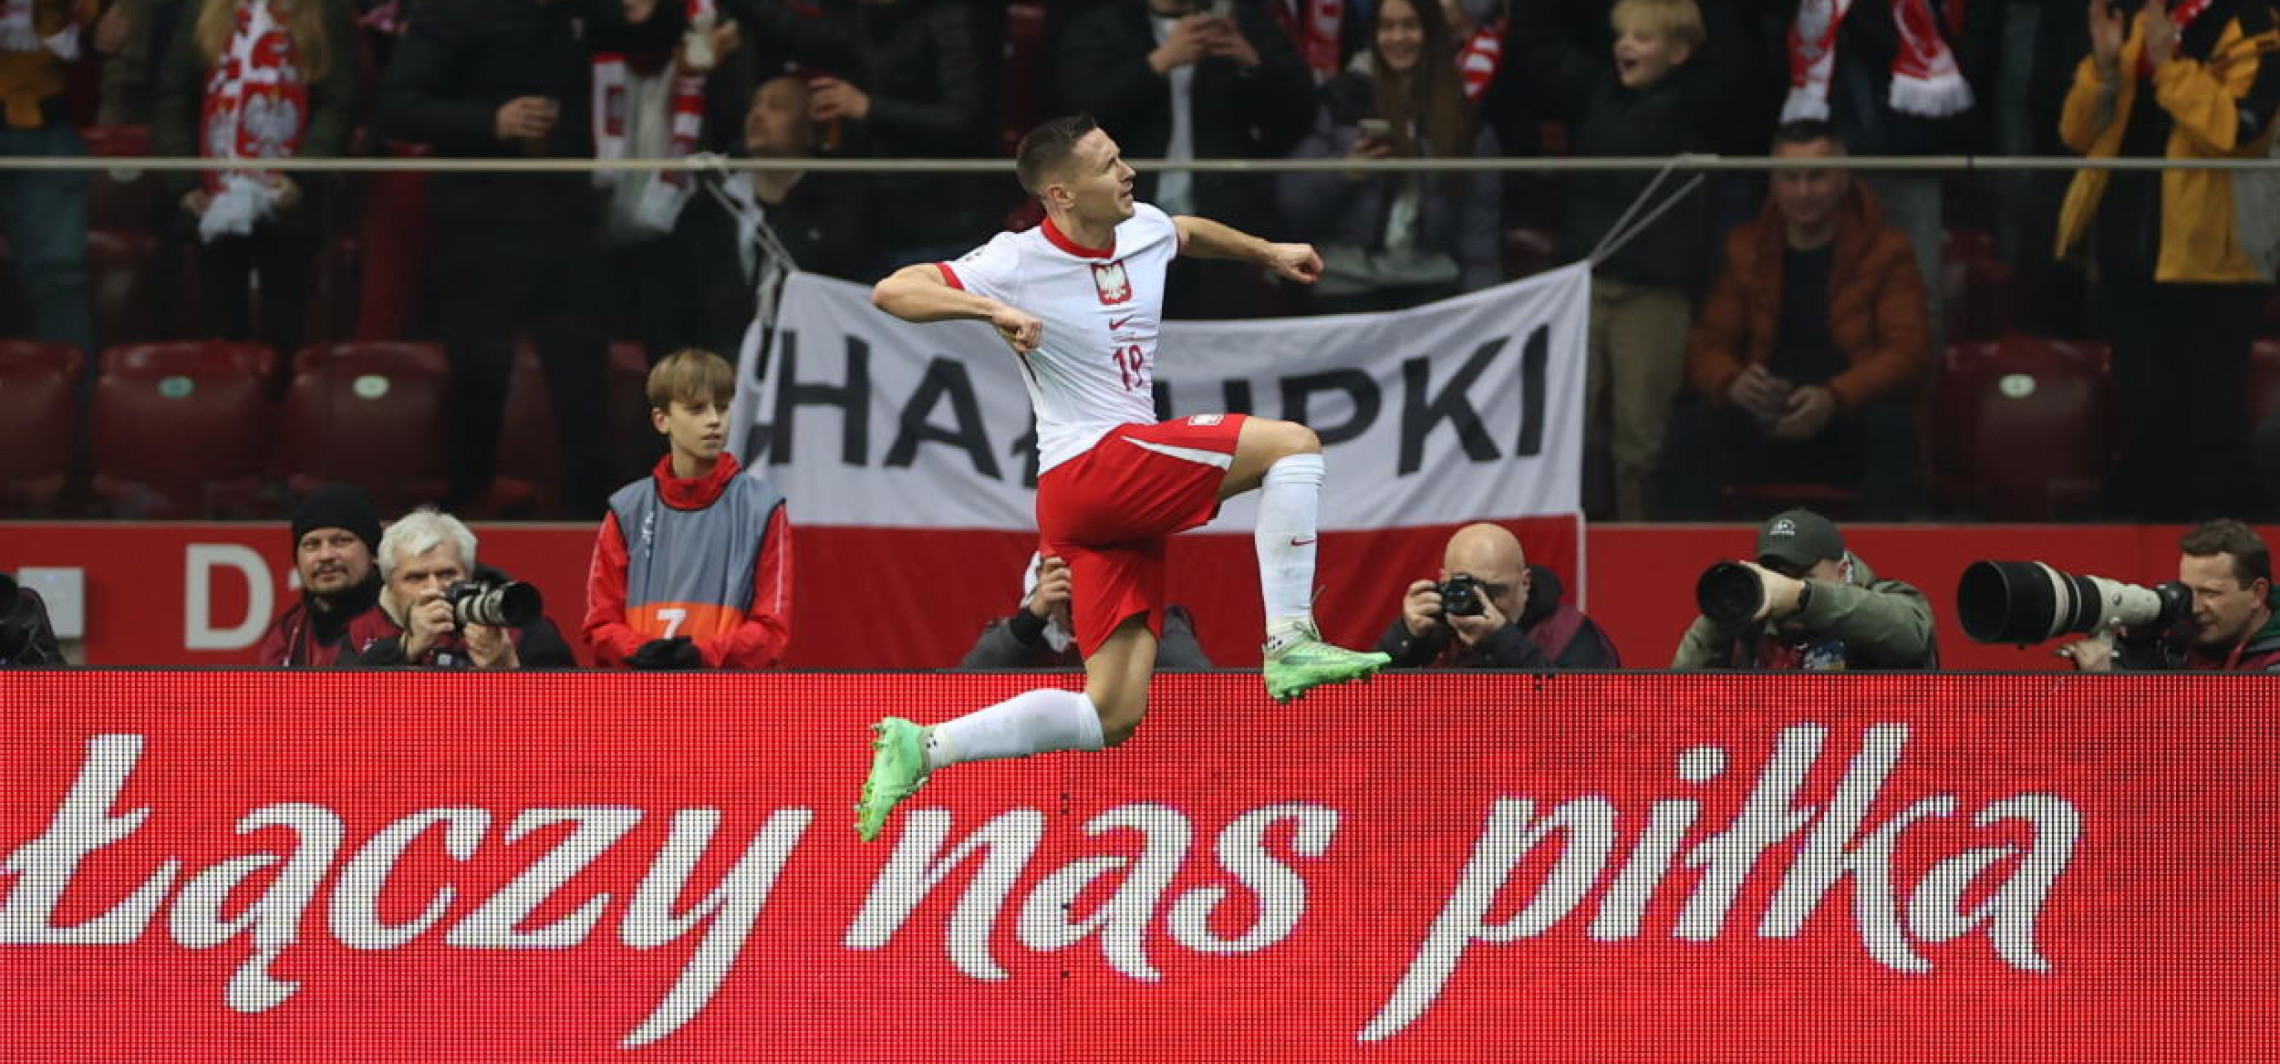 Kraj - Piłkarska reprezentacja Polski wygrała w Warszawie z Estonią 5:1